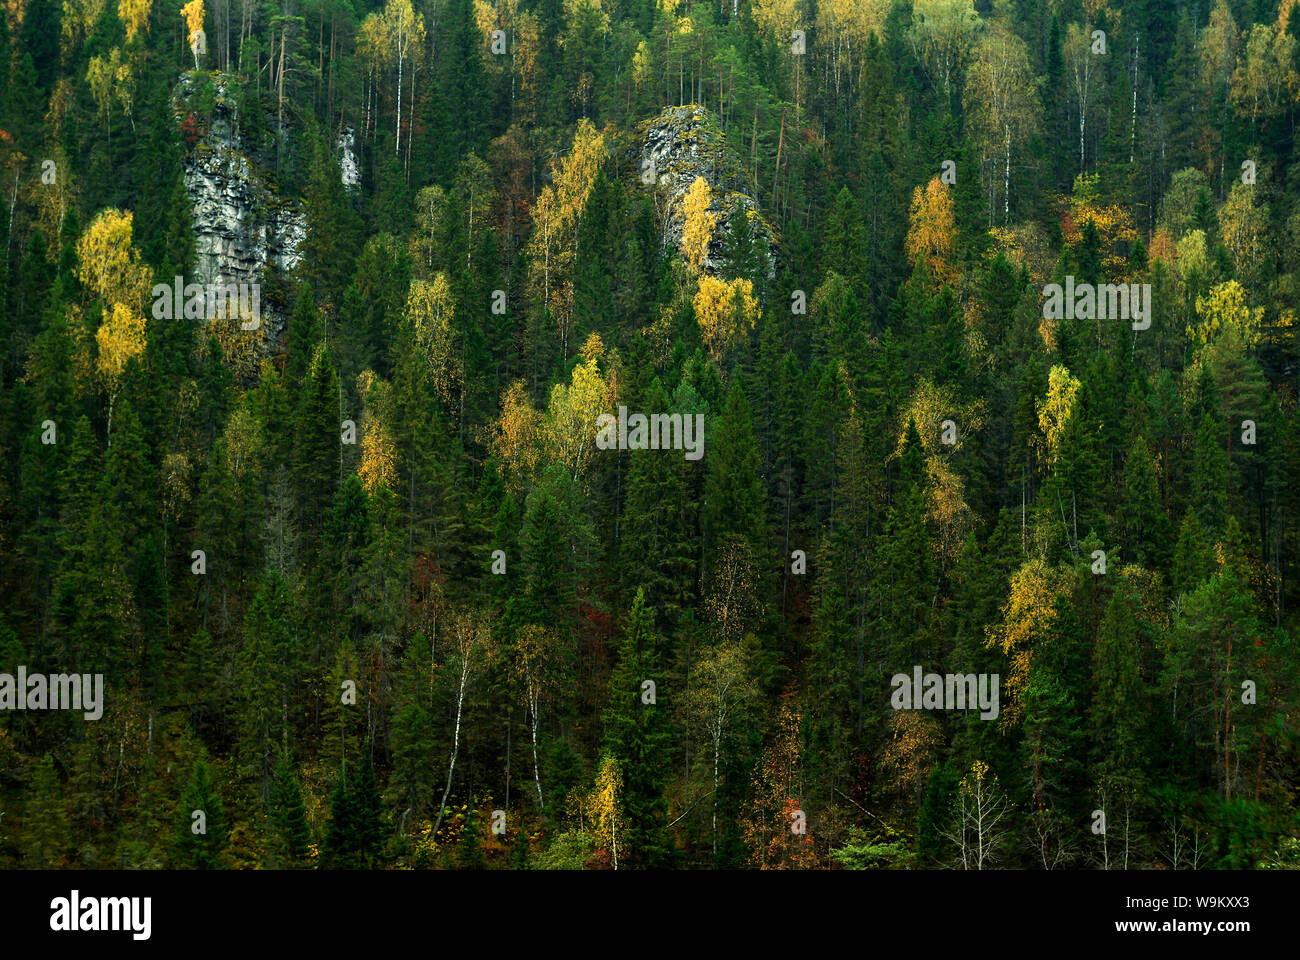 Hintergrund - der Hang eines Rocky Mountain mit Herbst nadelholz - Laubwald bewachsen Stockfoto